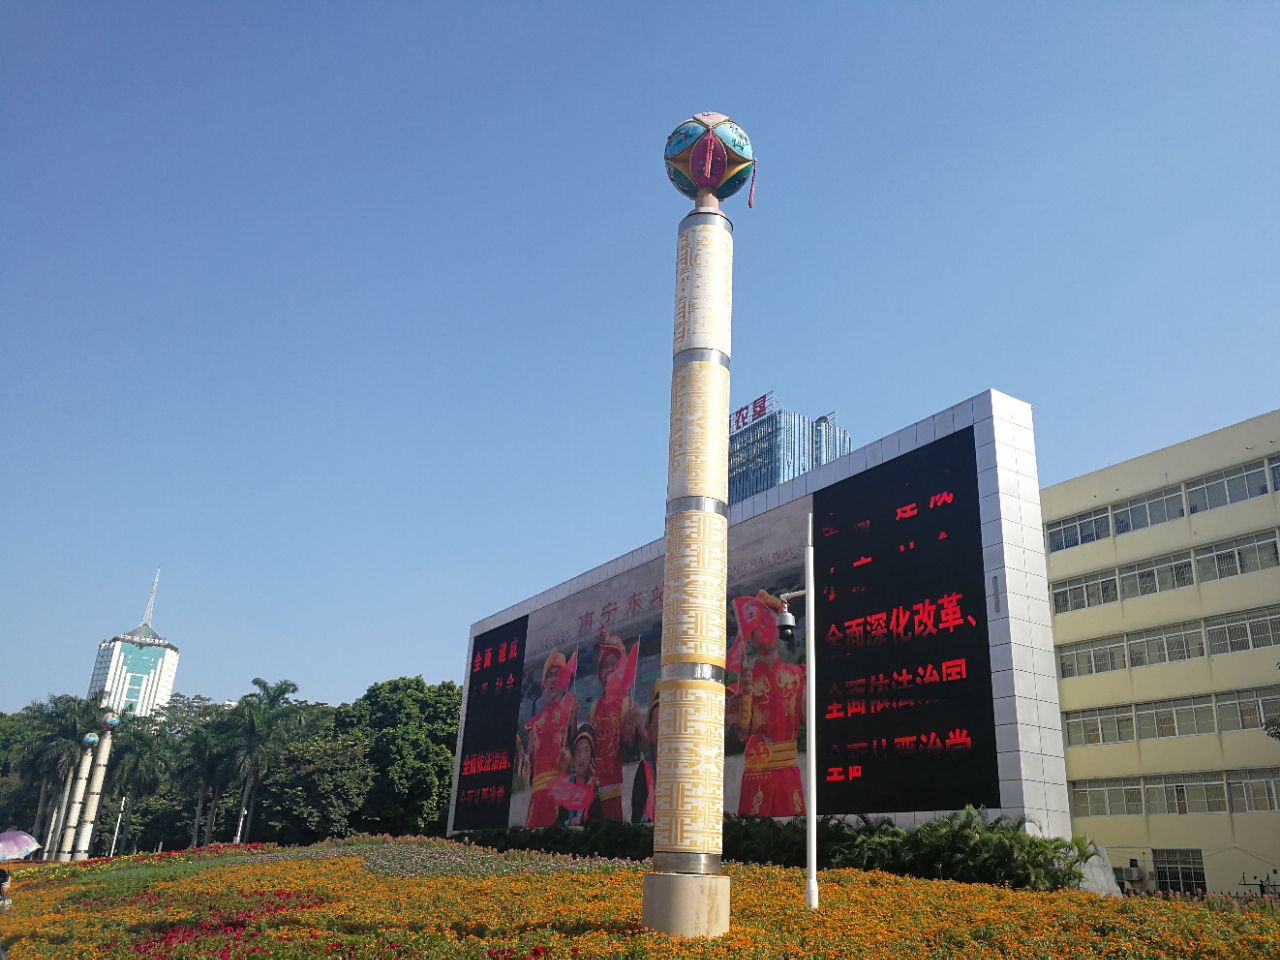 广西壮族自治区博物馆广西壮族自治区博物馆Guangxi Zhuang Autonomous Region Museum